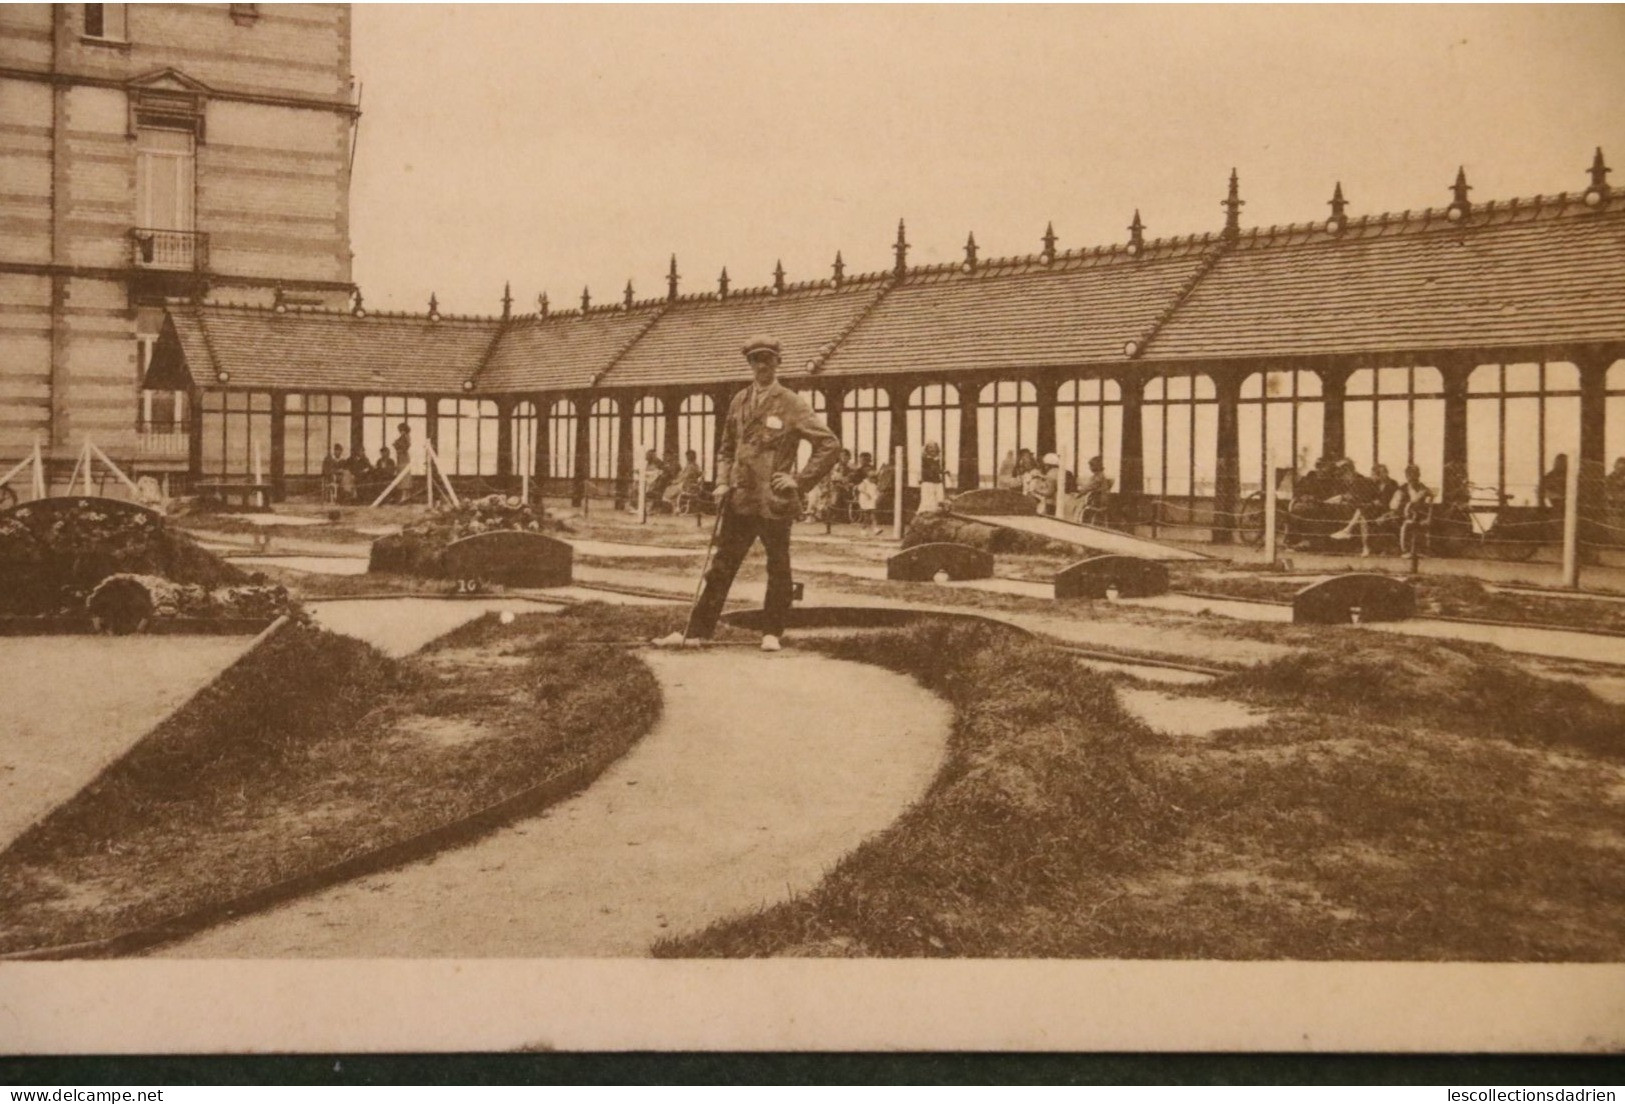 Carte postale - Heist Heyst pare-vent et golf windscherm en golf cachet de Heyst aan zee 1912